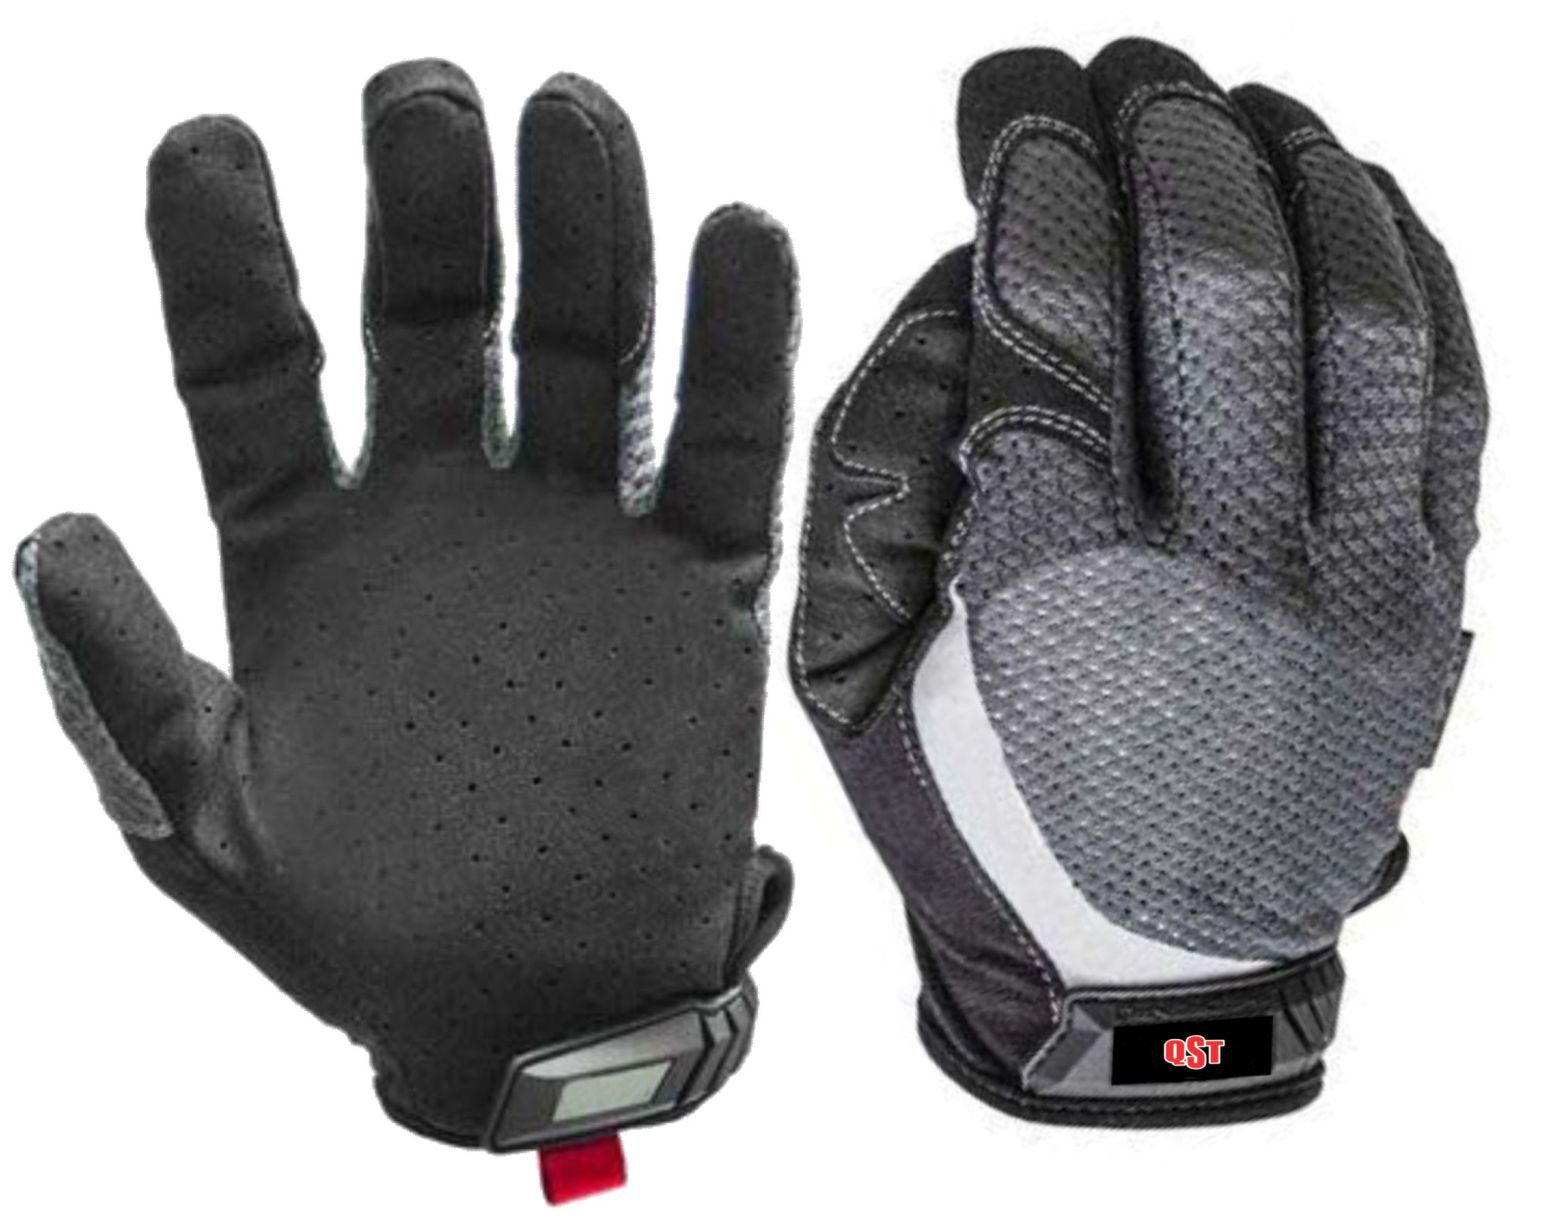 Full finger Gloves - ACS-1570